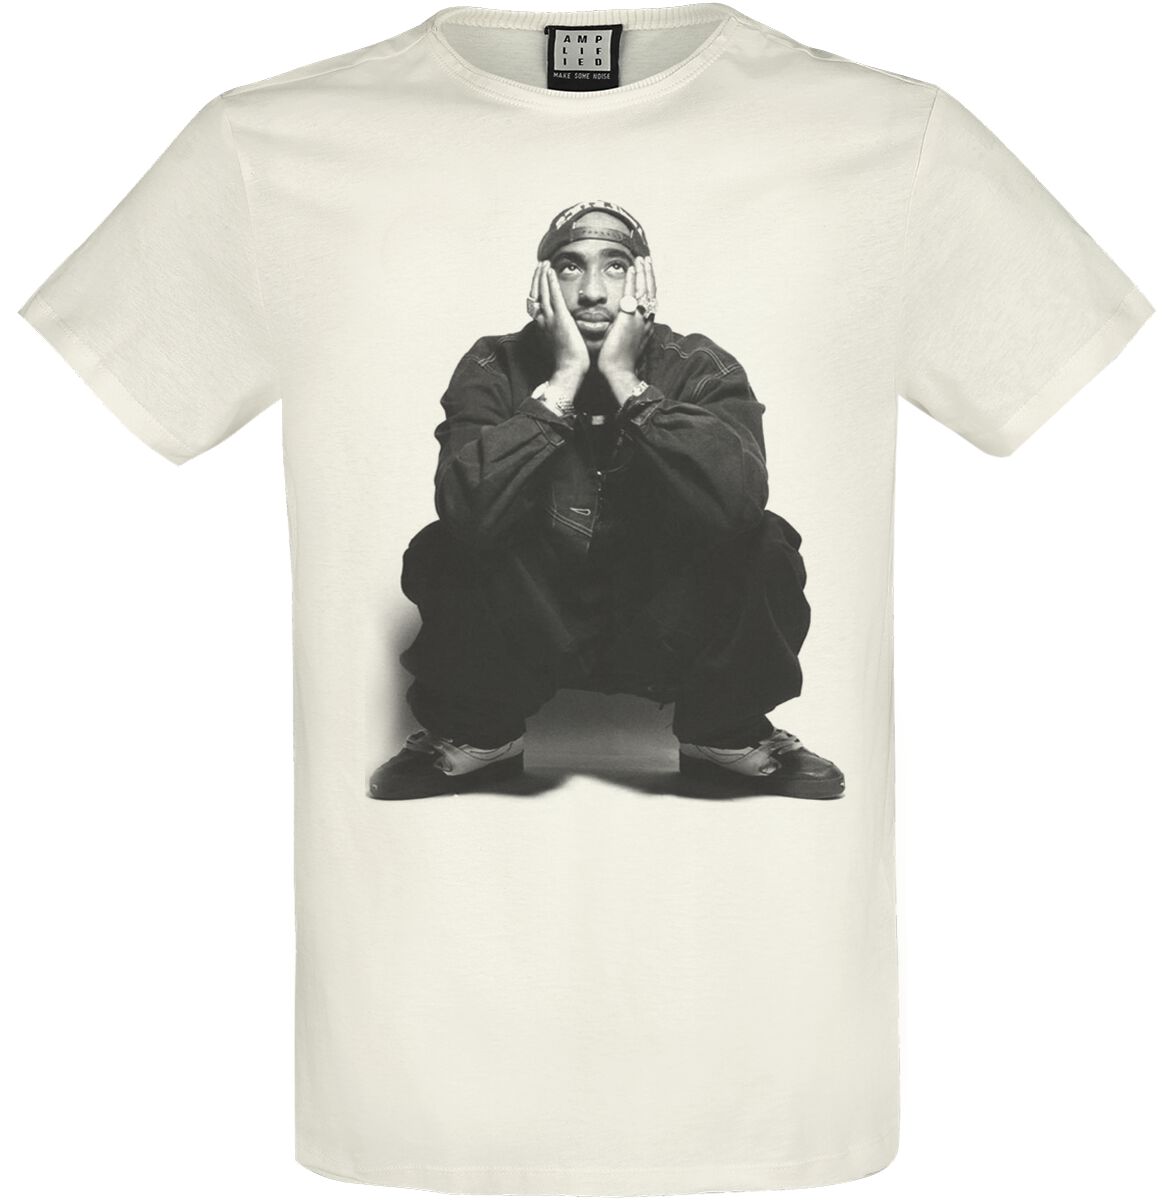 Tupac Shakur T-Shirt - Amplified Collection - Contemplation - S bis XXL - für Männer - Größe S - altweiß  - Lizenziertes Merchandise!